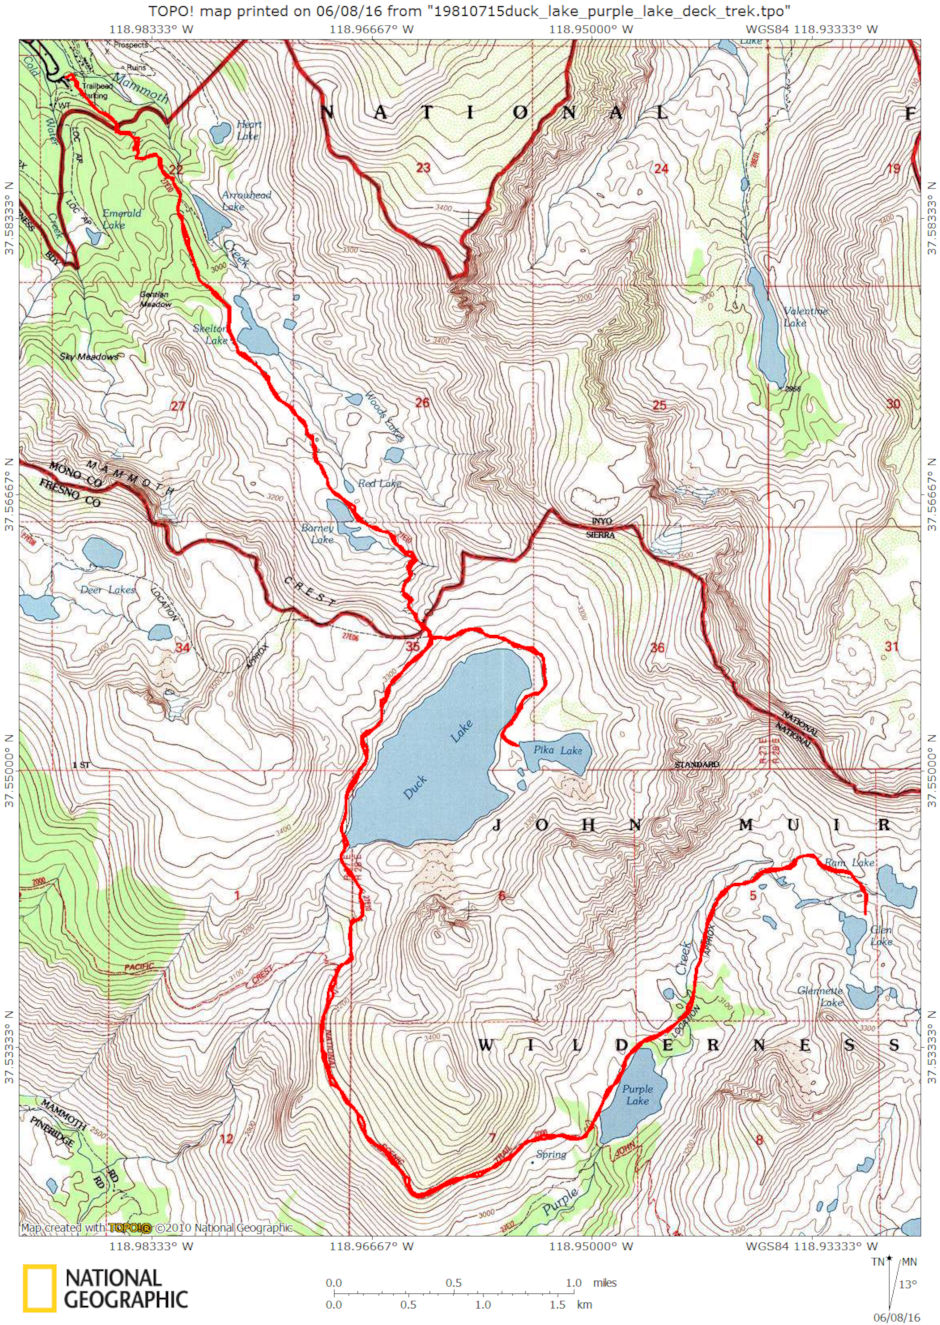 Duck Lake-Franklin Lake trip map